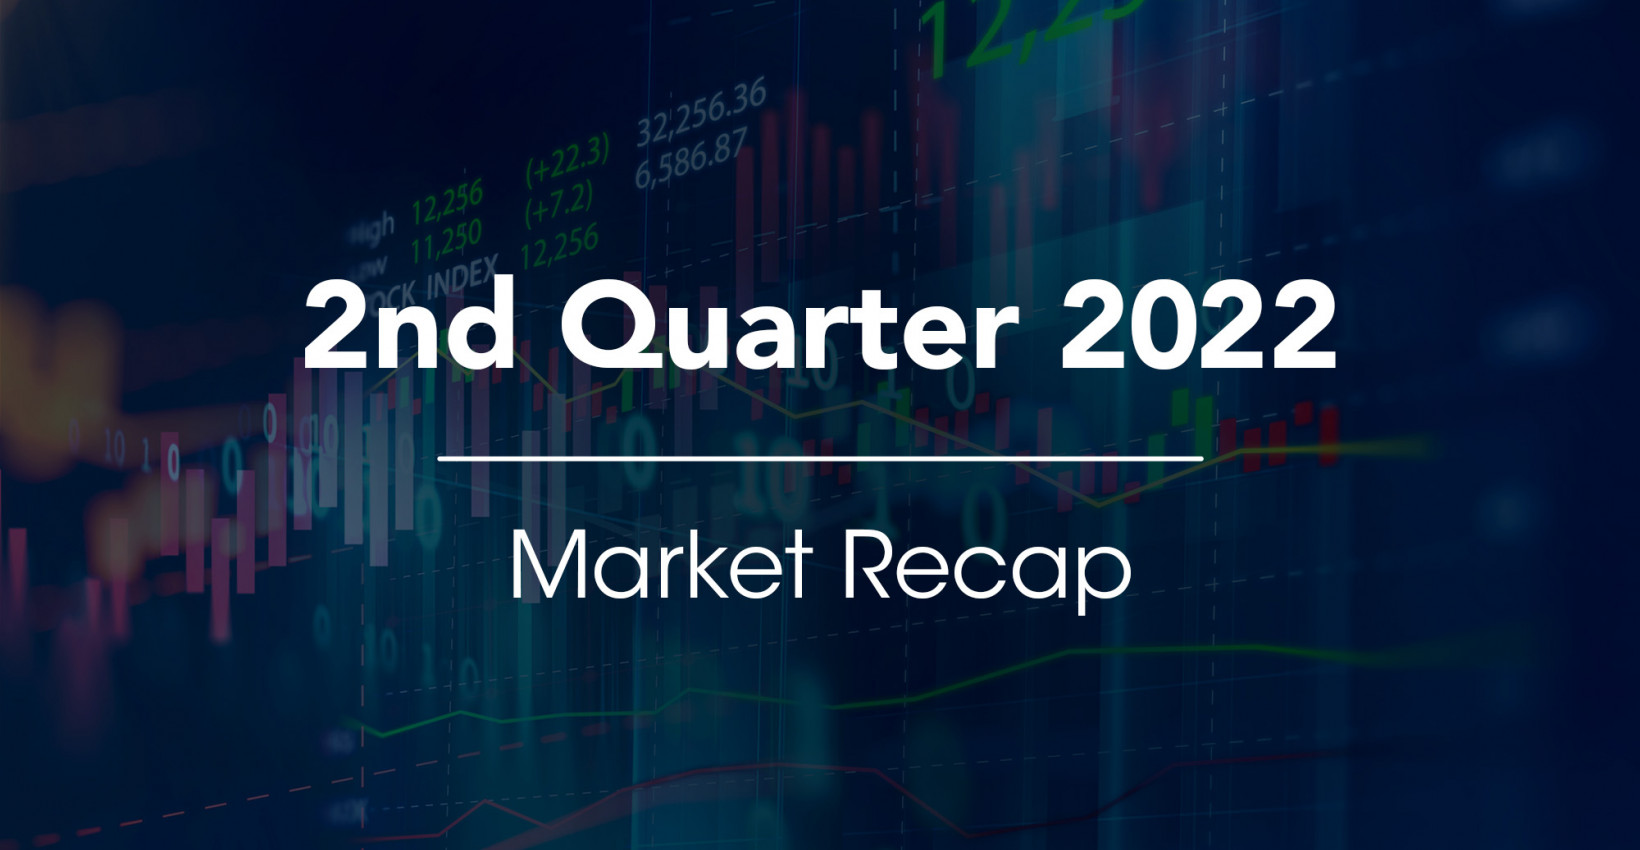 2nd Quarter 2022 Market Recap